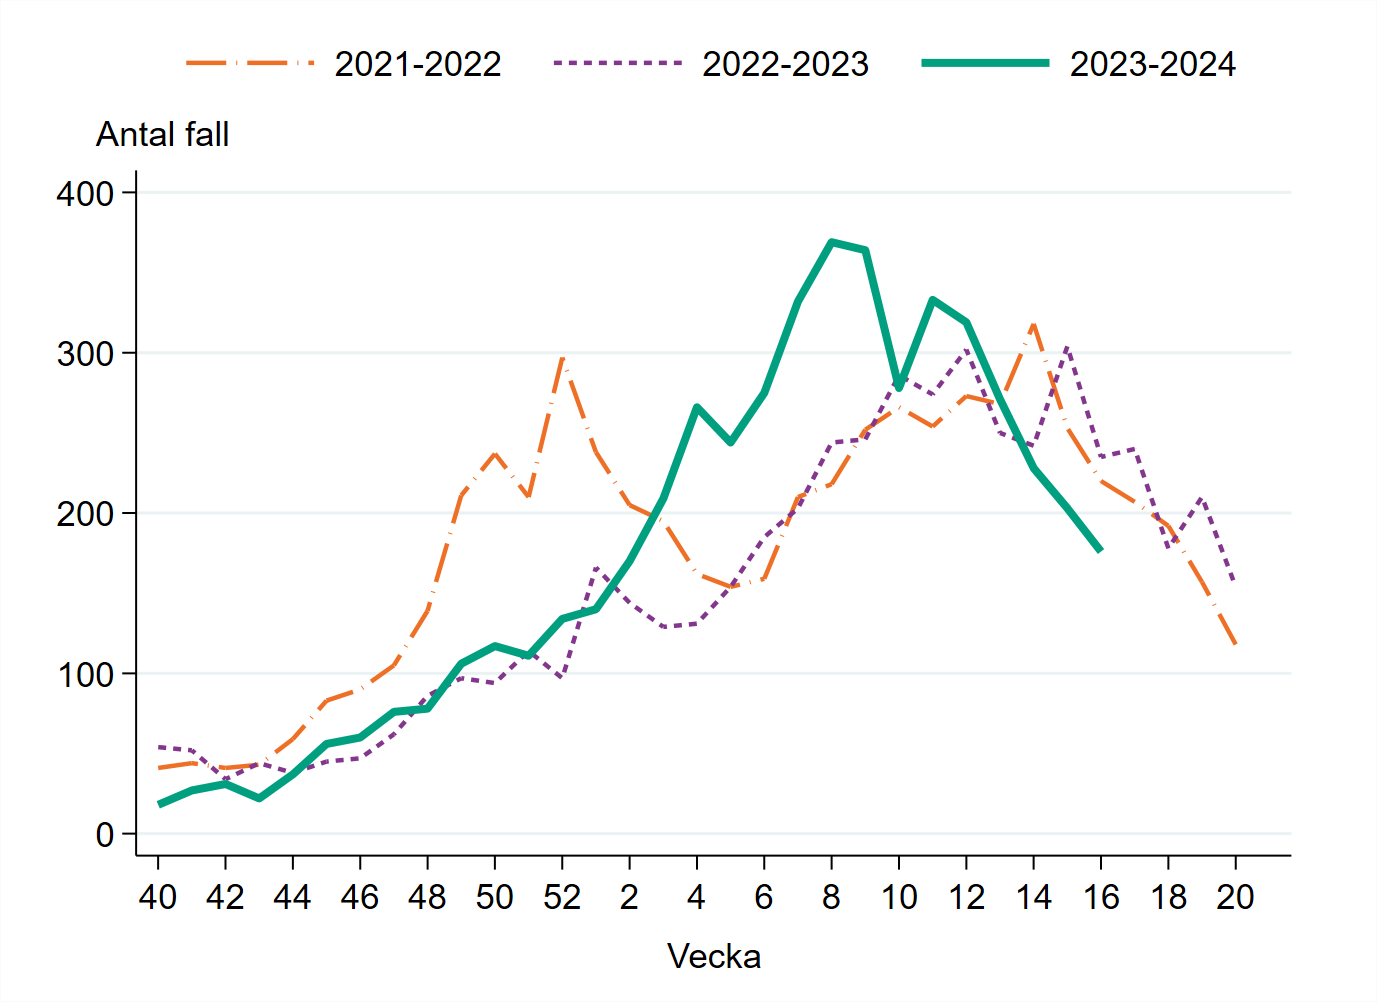 Antal laboratoriebekräftade fall av calicivirus (noro- och sapovirus) säsong 2020-2021, 2021-2022, 2022-2023 samt medel för säsongerna från 2016 till 2020.